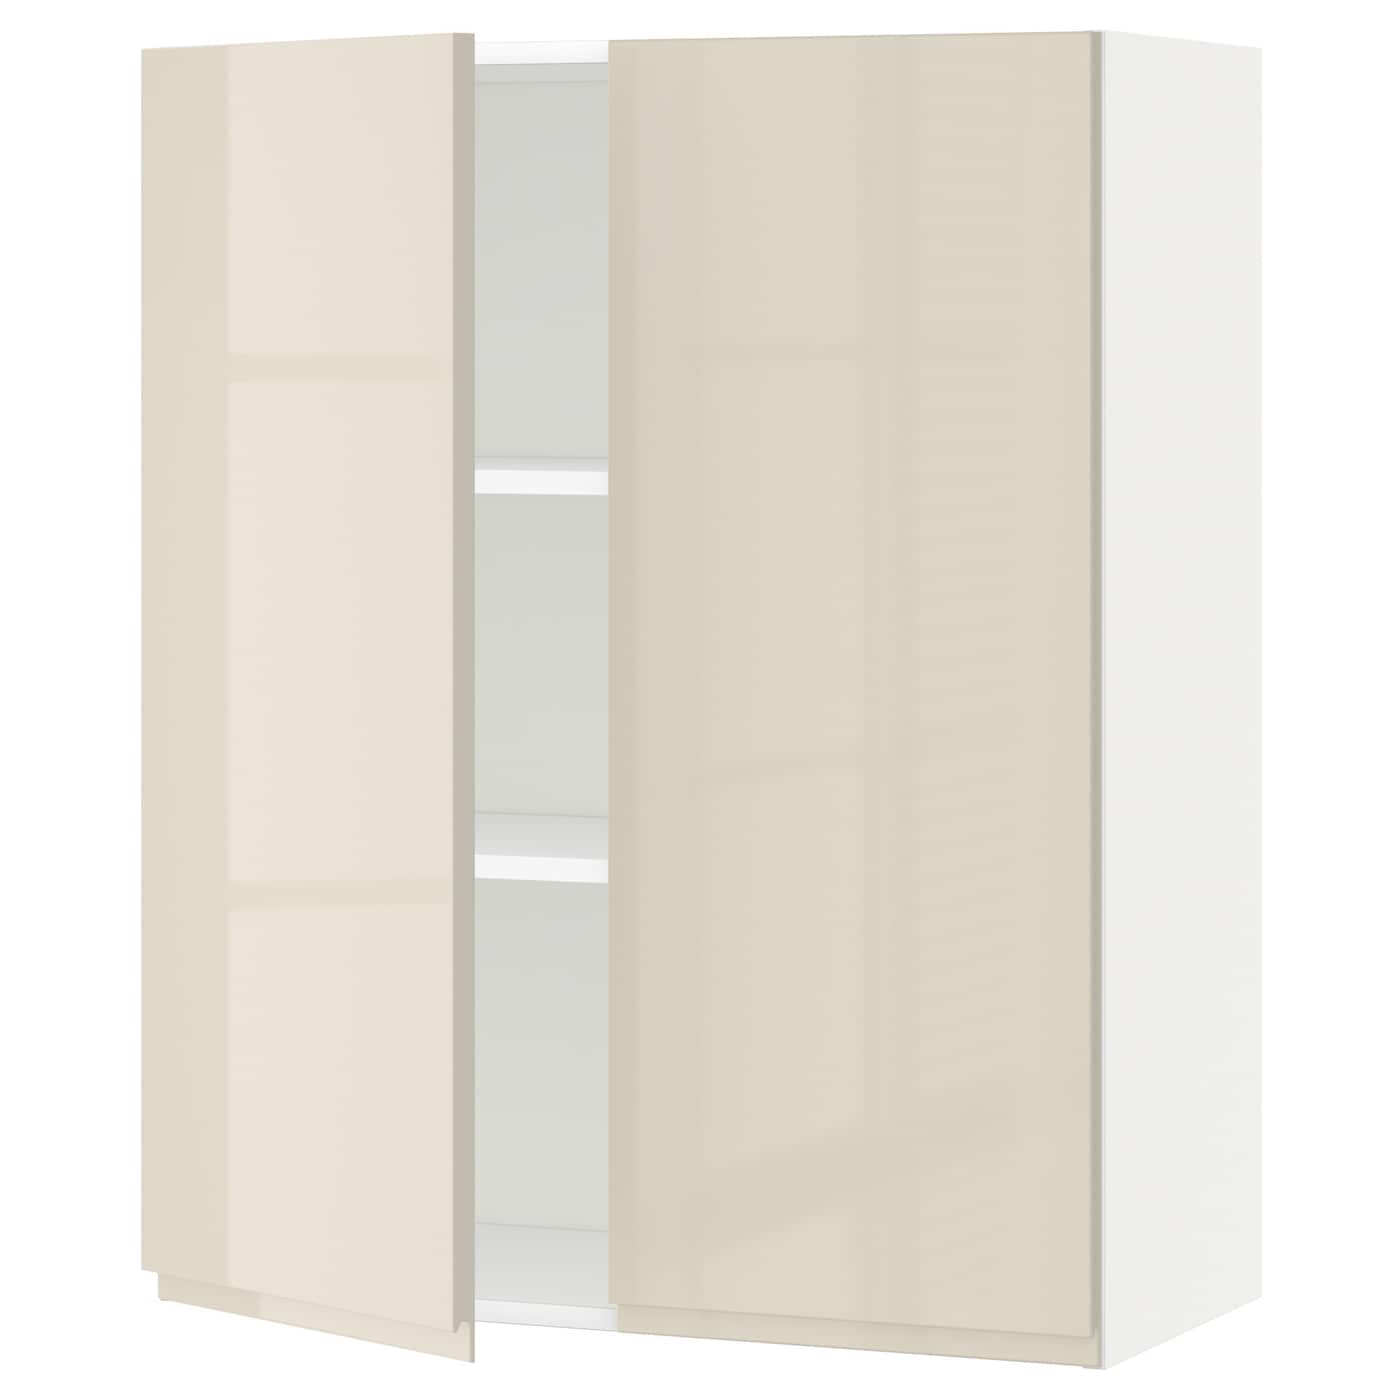 Навесной шкаф с полкой - METOD IKEA/ МЕТОД ИКЕА, 100х80 см, белый/бежевый